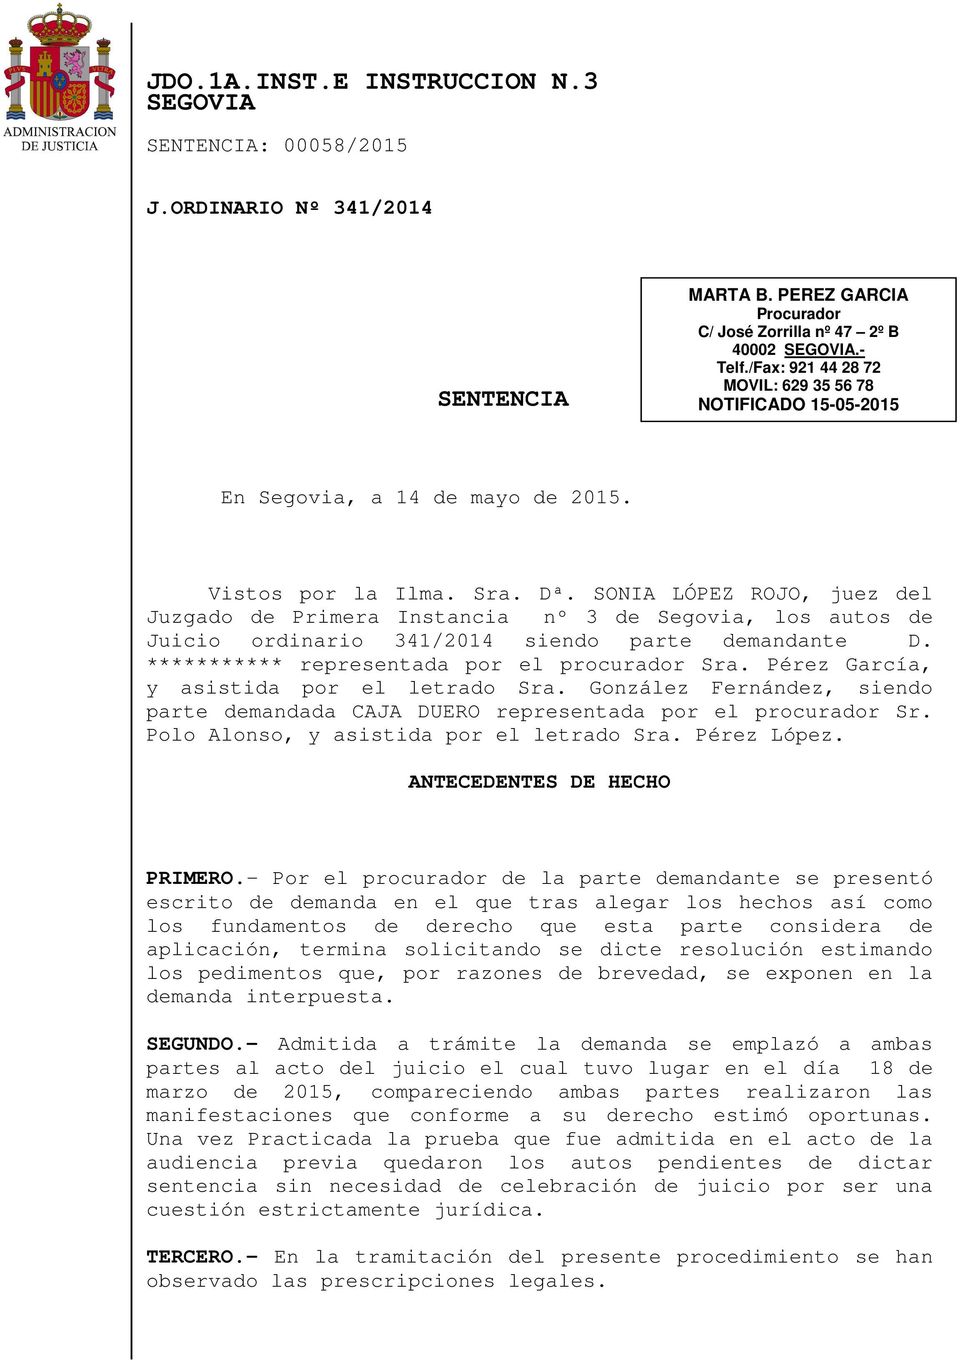 SONIA LÓPEZ ROJO, juez del Juzgado de Primera Instancia nº 3 de Segovia, los autos de Juicio ordinario 341/2014 siendo parte demandante D. *********** representada por el procurador Sra.